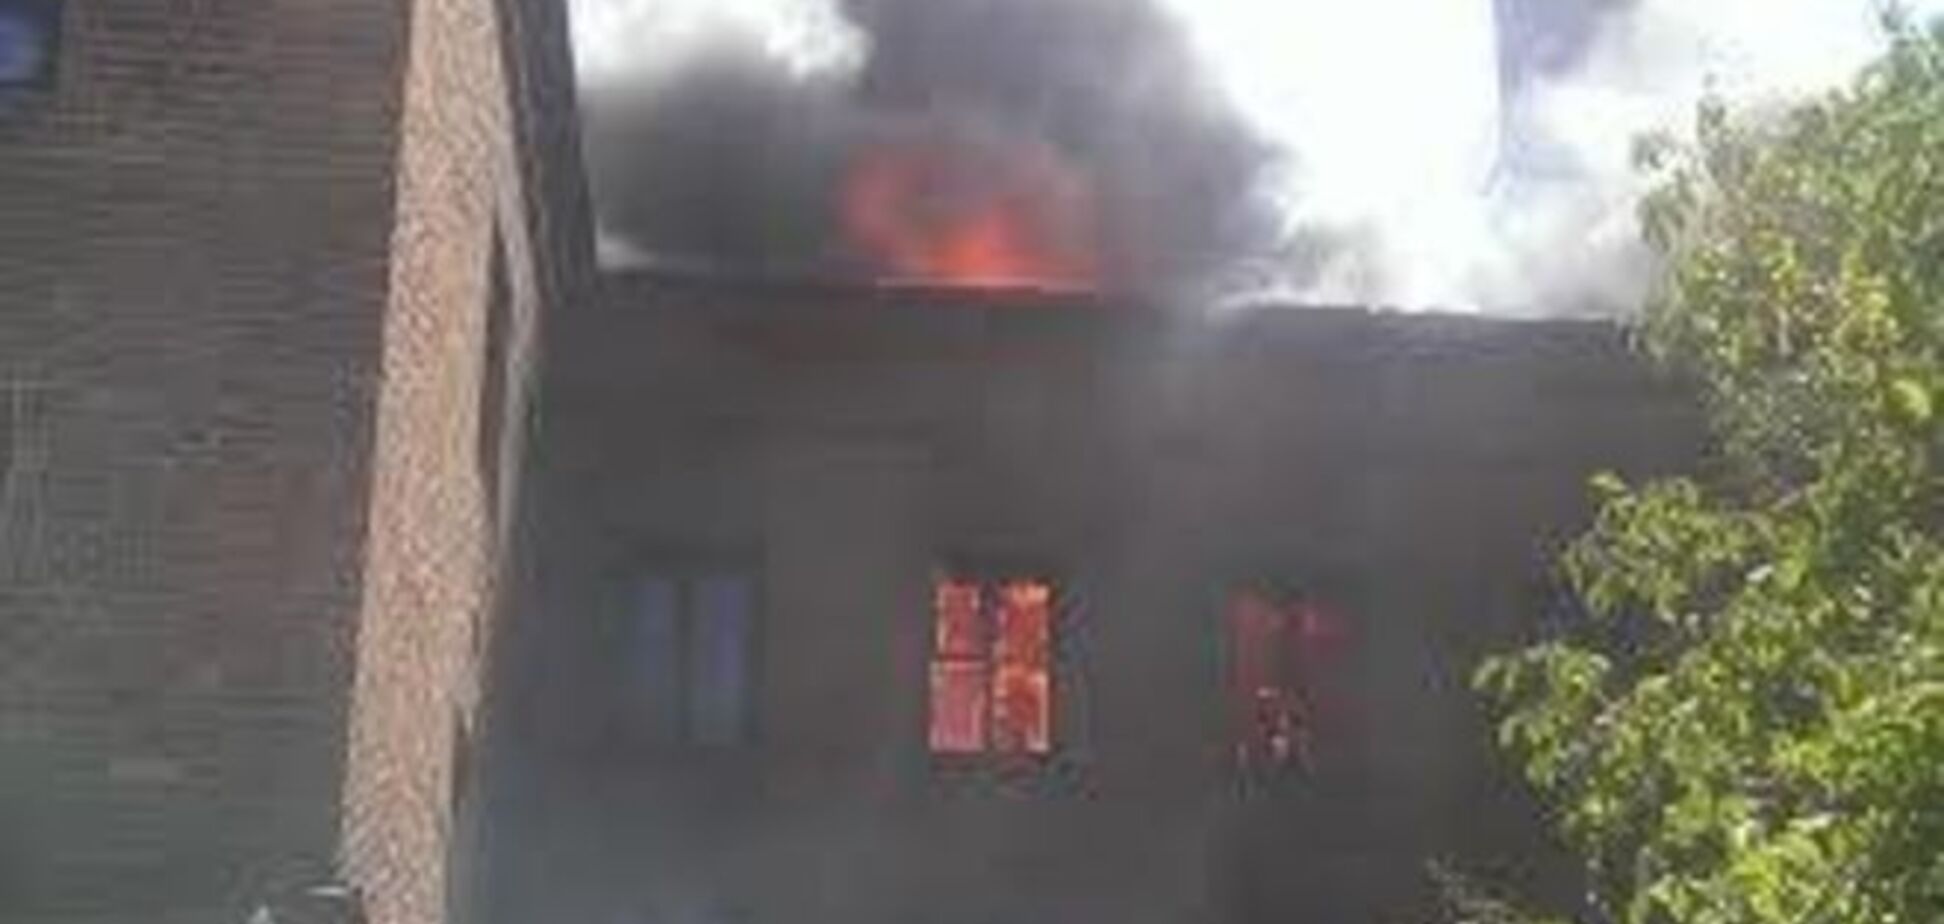 Пожар на заброшенной ТЭЦ окутал Жмеринку зловещим дымом: фотофакт